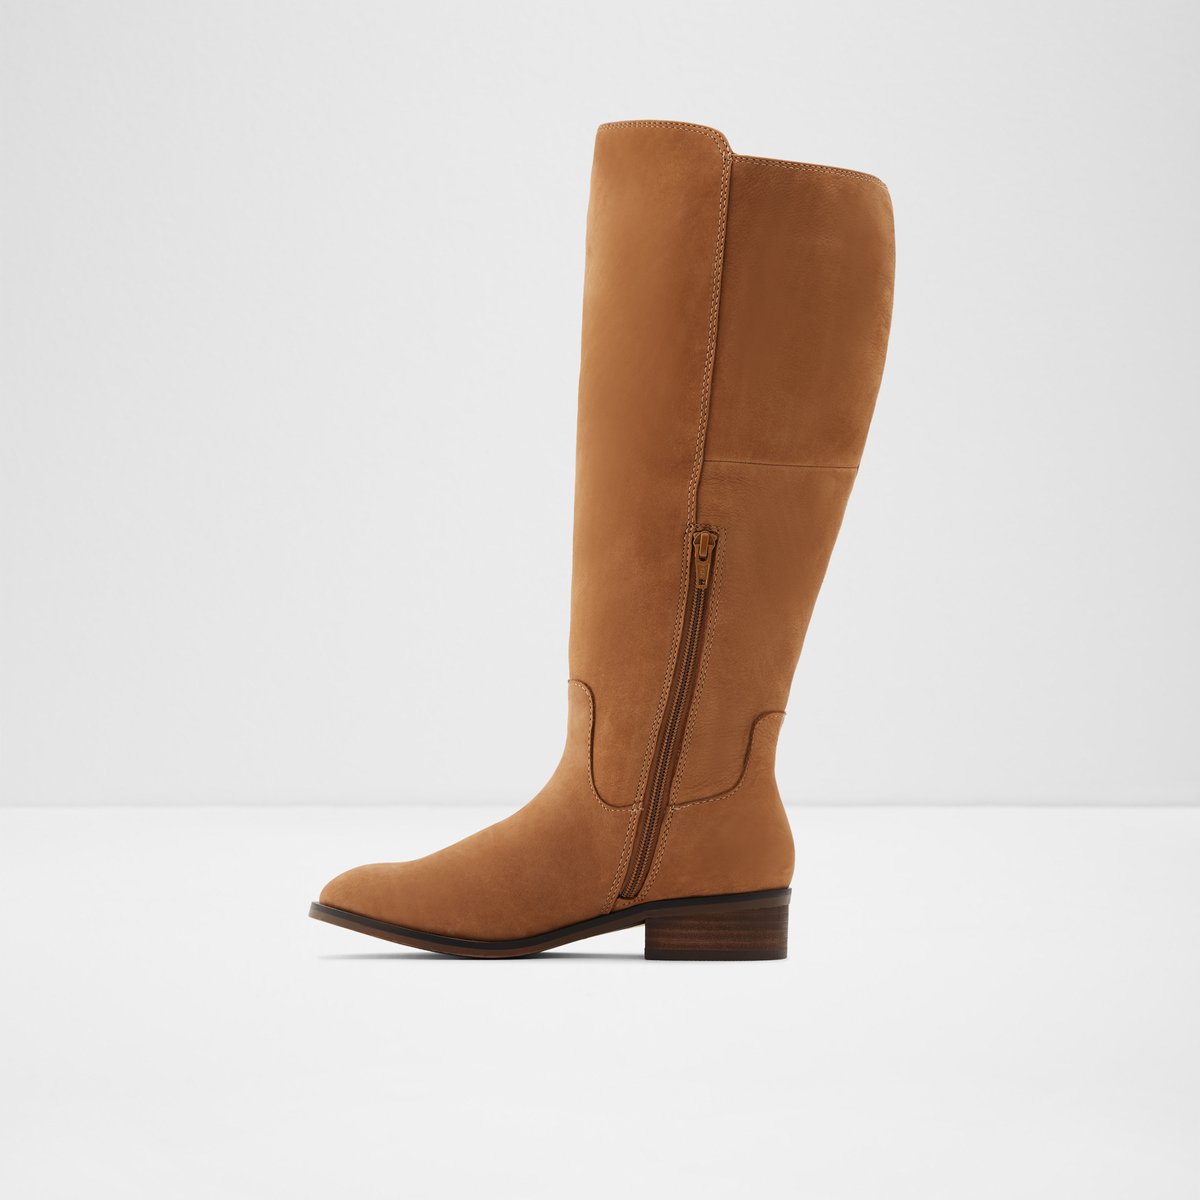 Gaenna-wc Medium Brown Women's Boots 